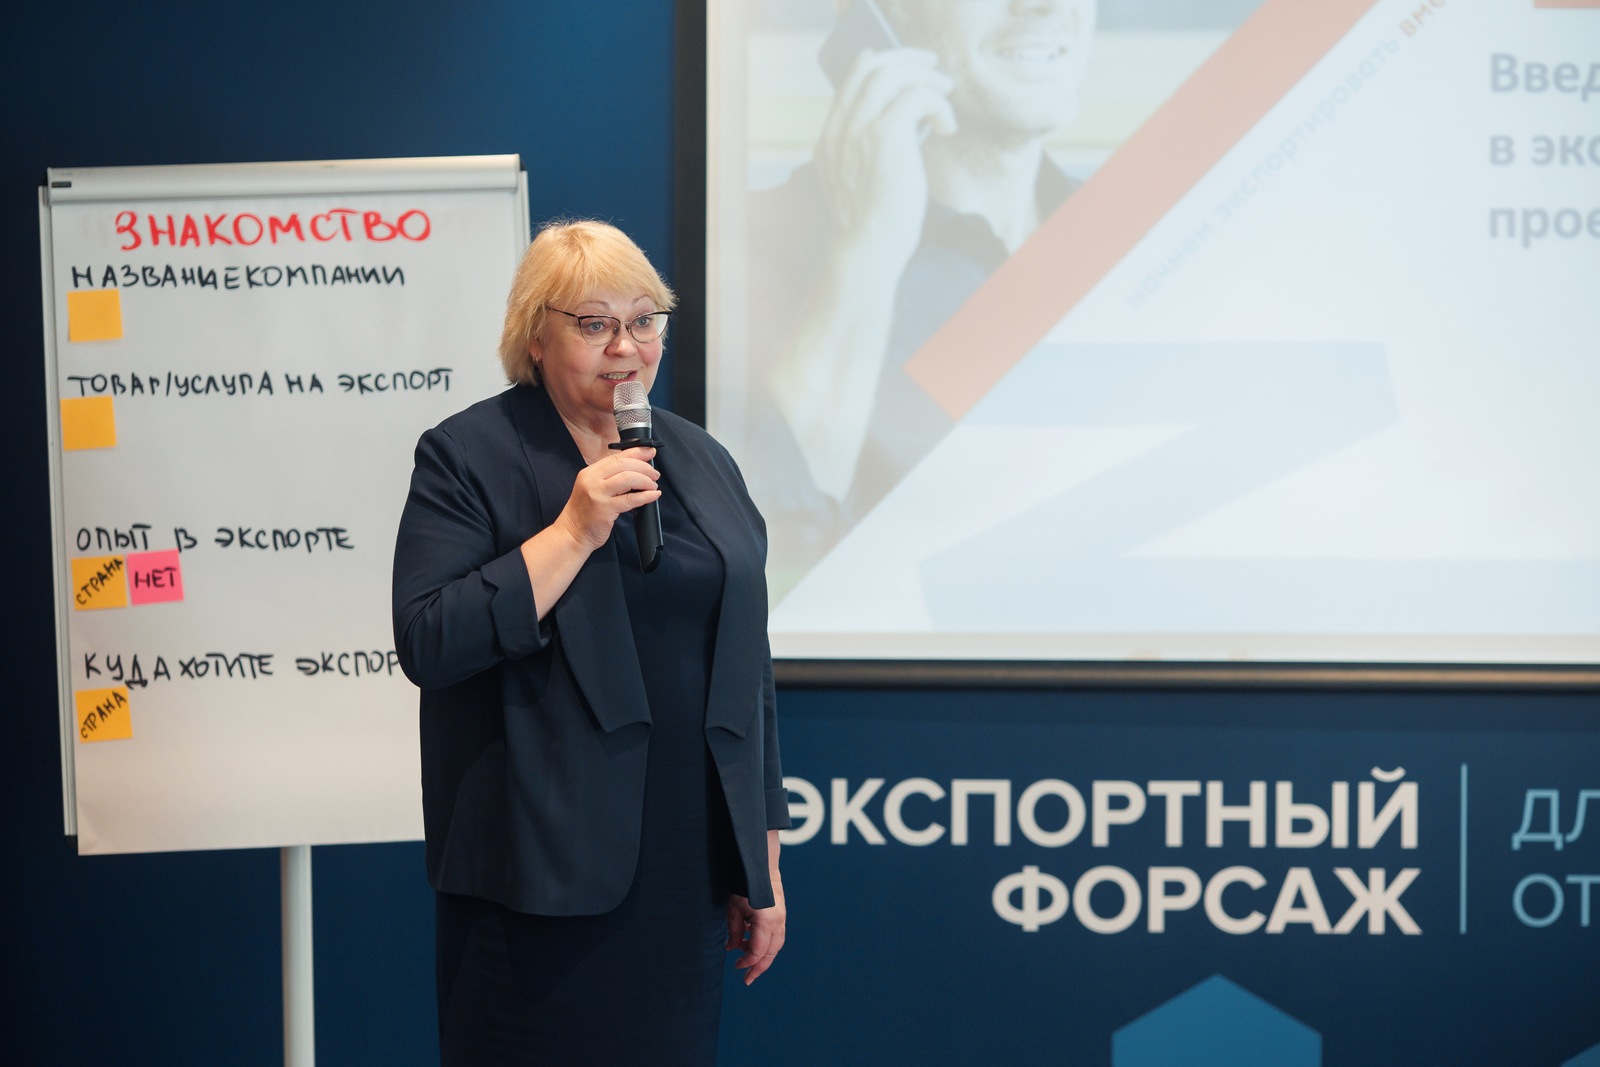 15 компаний Башкортостана начали обучение в 6 отраслевом потоке «Экспортного форсажа»